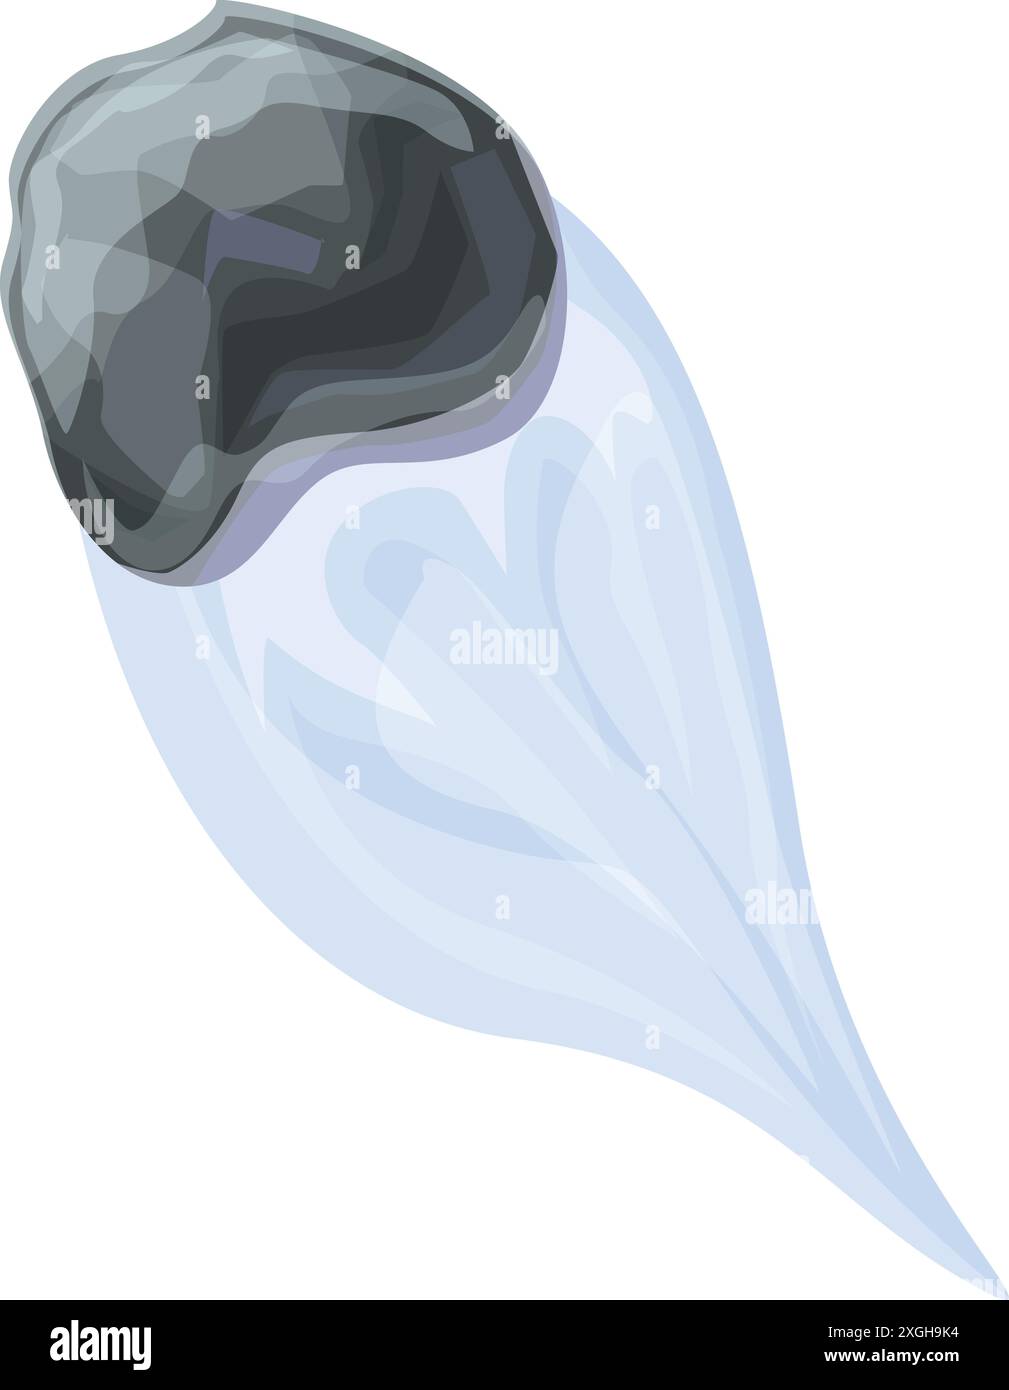 Météorite grise tombant avec une traînée bleue sur fond blanc Illustration de Vecteur